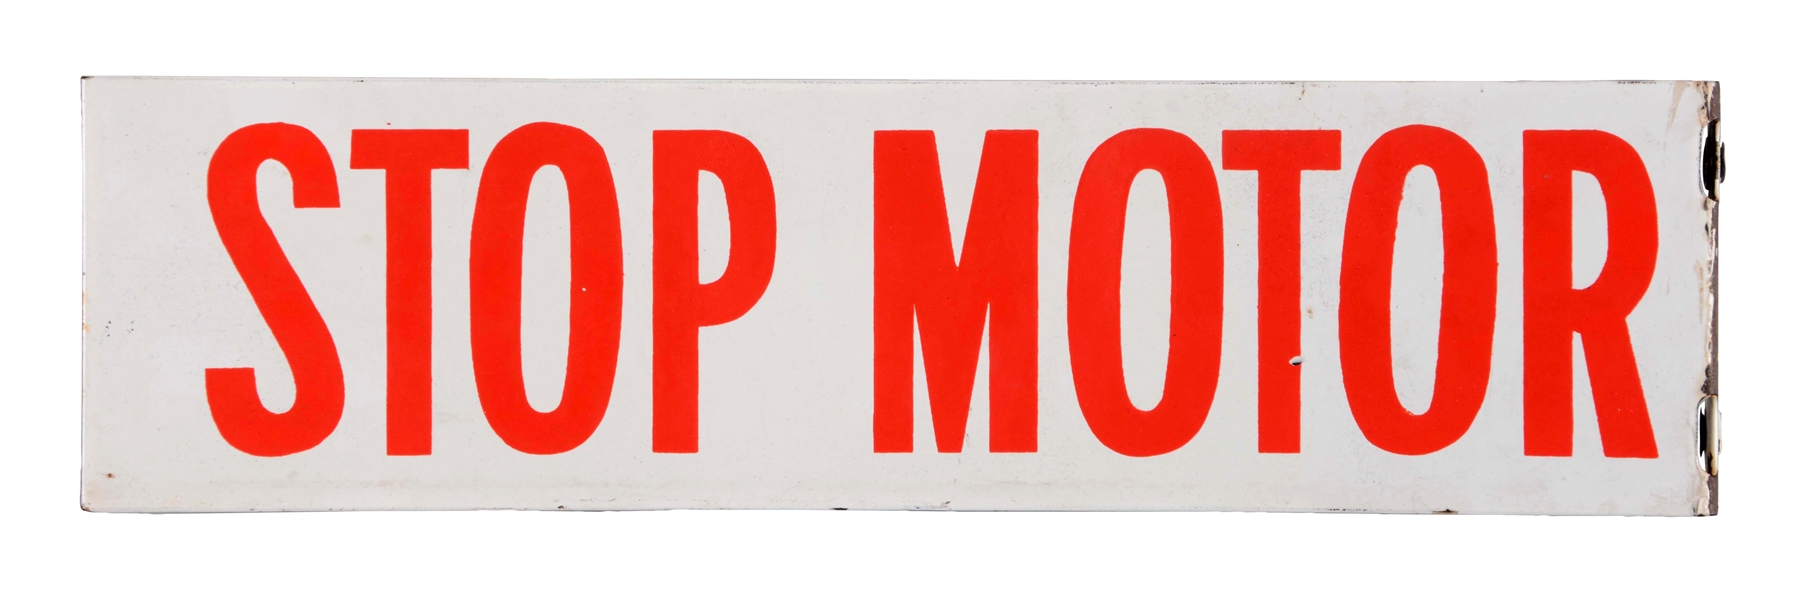 STOP MOTOR PORCELAIN FLANGE SIGN